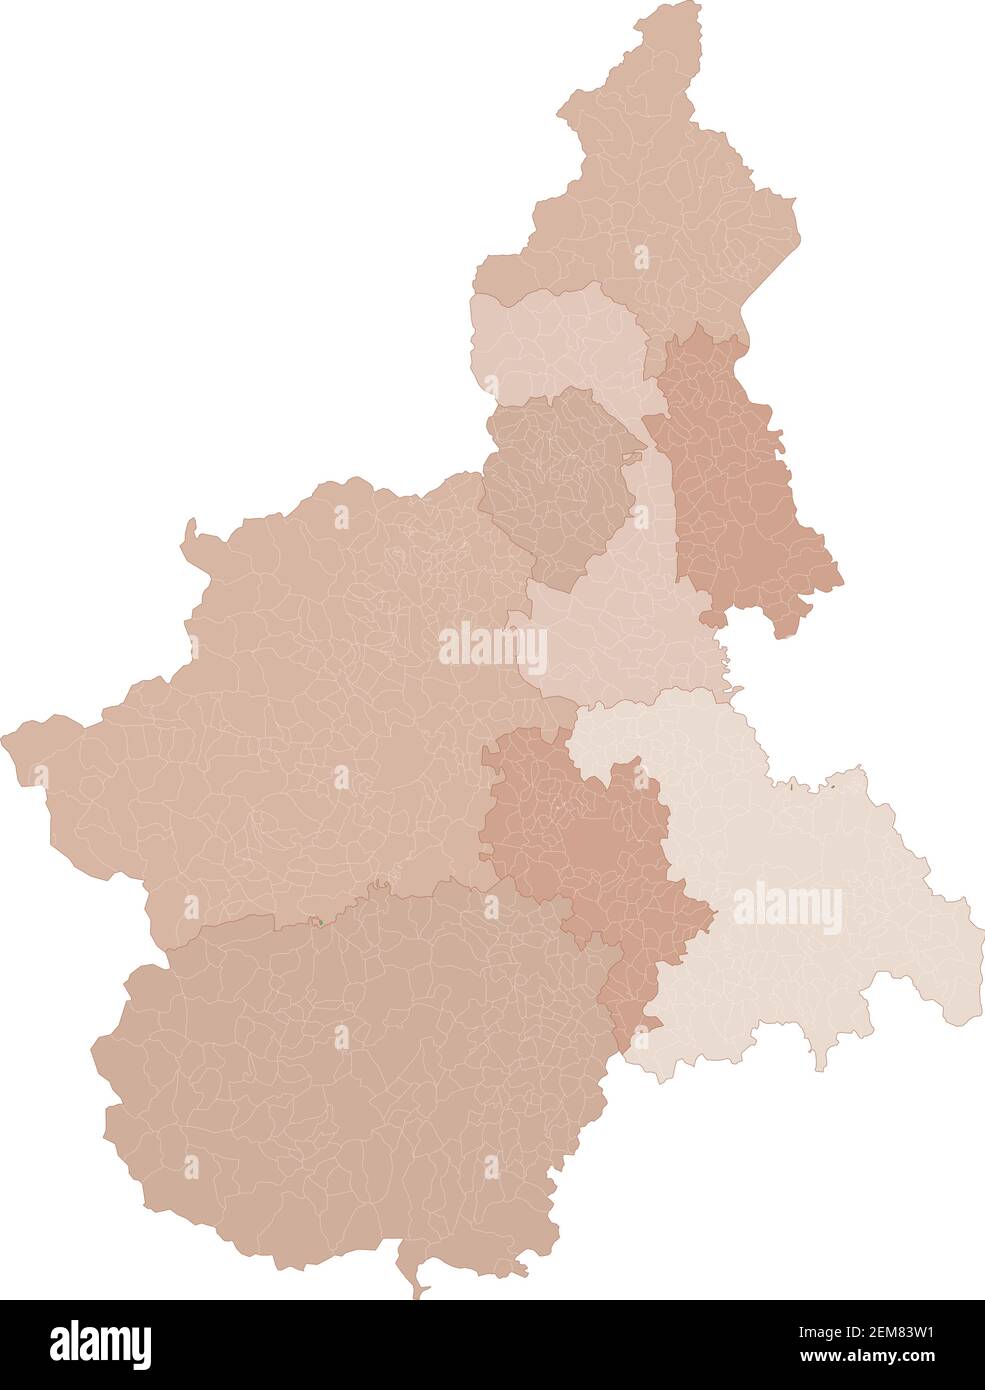 Mappa del Piemonte, divisione per province e comuni. Poligoni chiusi e perfettamente modificabili, riempimento poligono e tracciati di colore modificabili a volontà. Livelli. Illustrazione Vettoriale